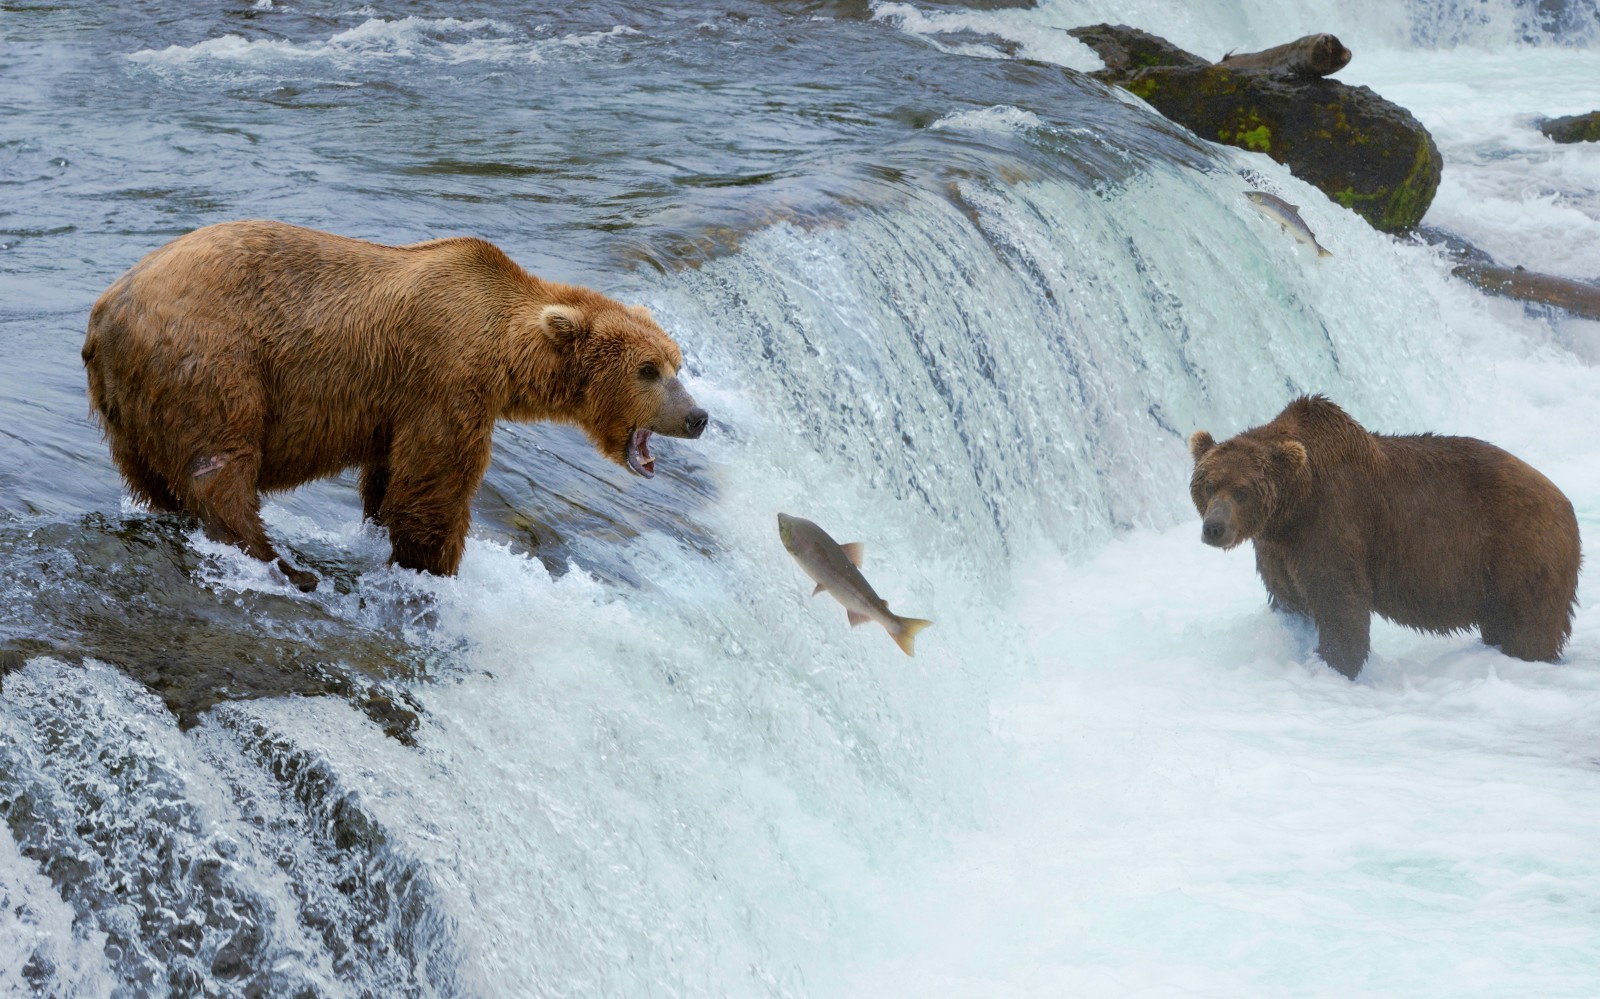 แม่น้ำ, น้ำตก, หมี, สัตว์, การล่าสัตว์, ปลา